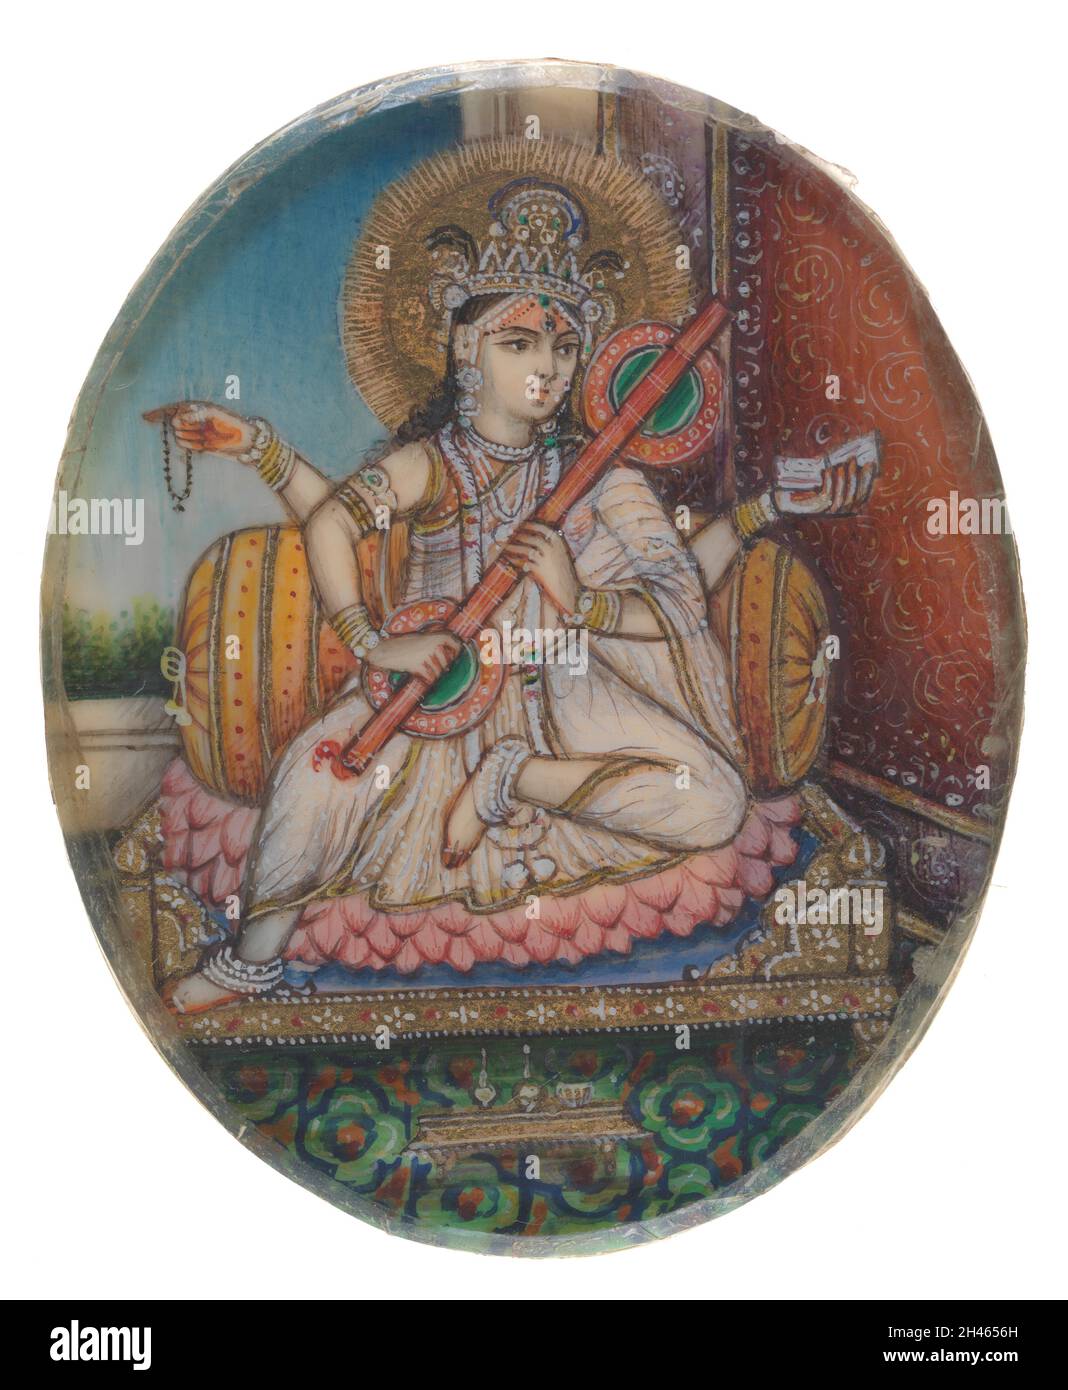 Saraswati, la déesse hindoue de l'apprentissage et de la connaissance et la femme de Brahma.Peinture de gouache par un artiste indien. Banque D'Images